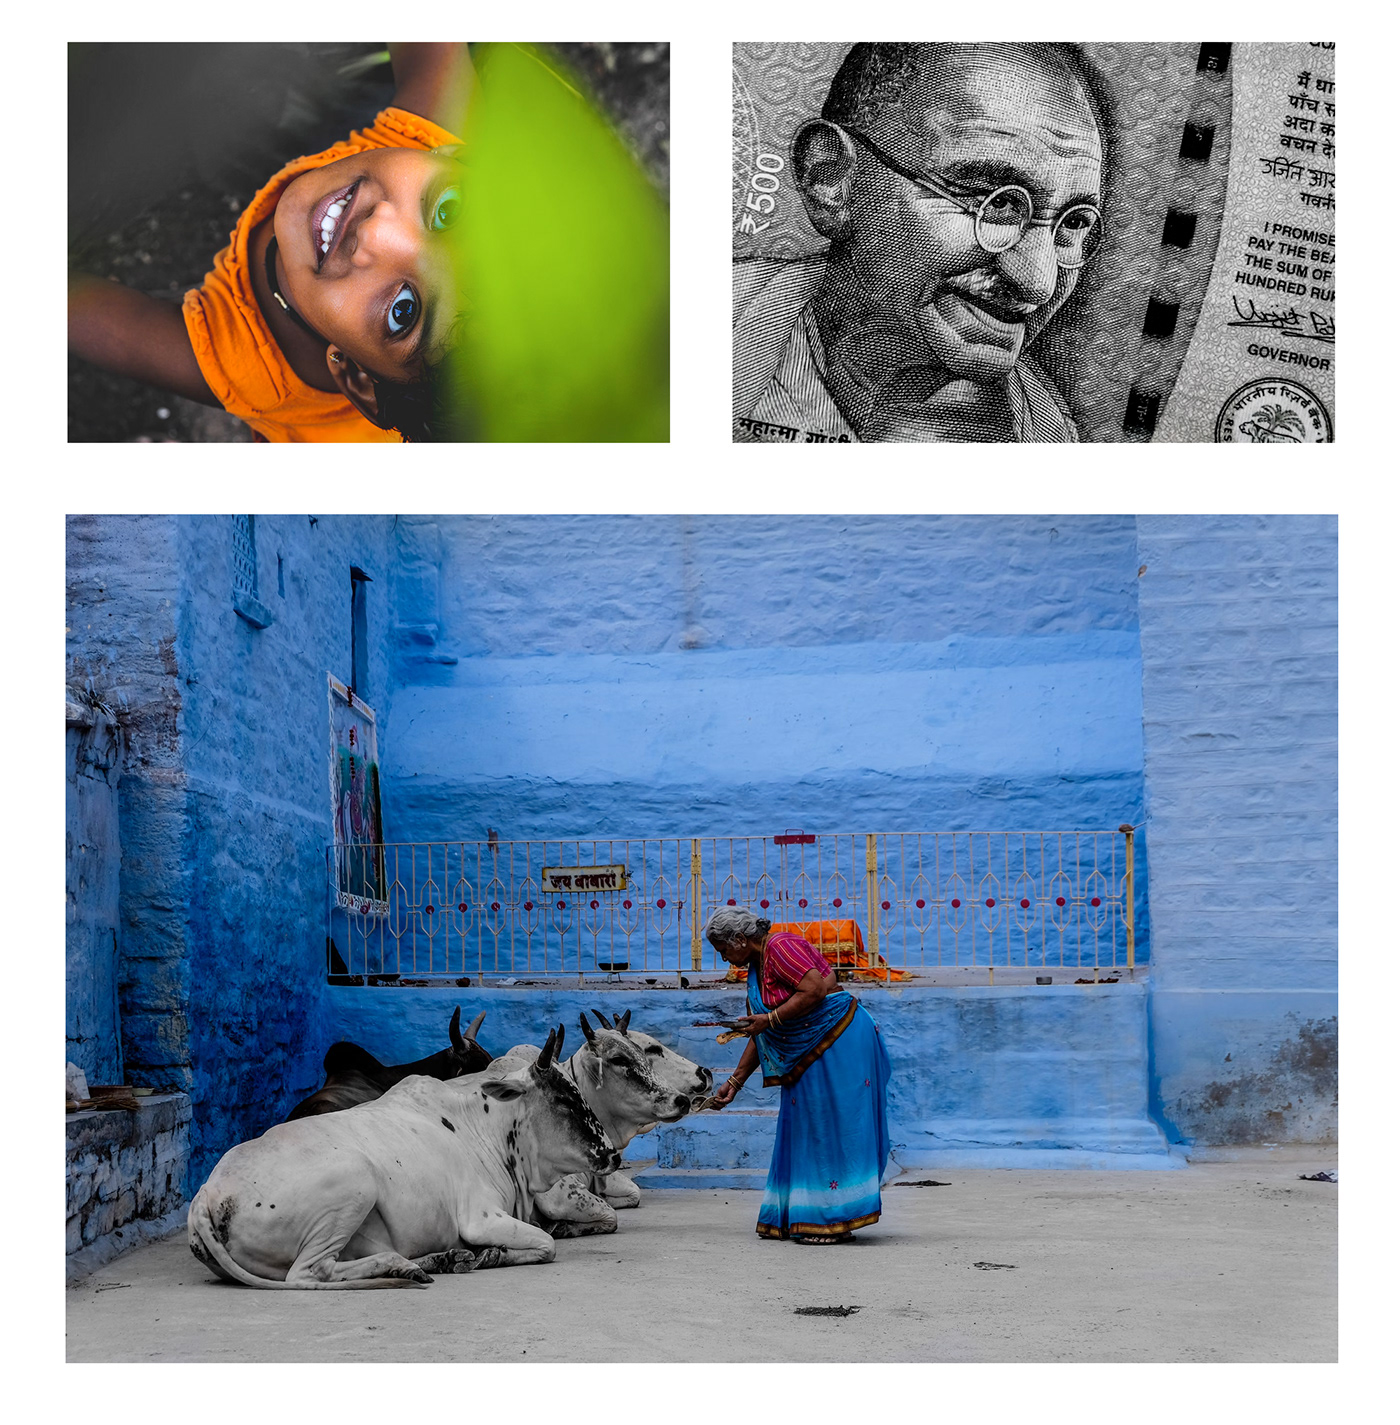 photoshoot Photography  India street photography Travel Editing  effect photo retouching  retouc